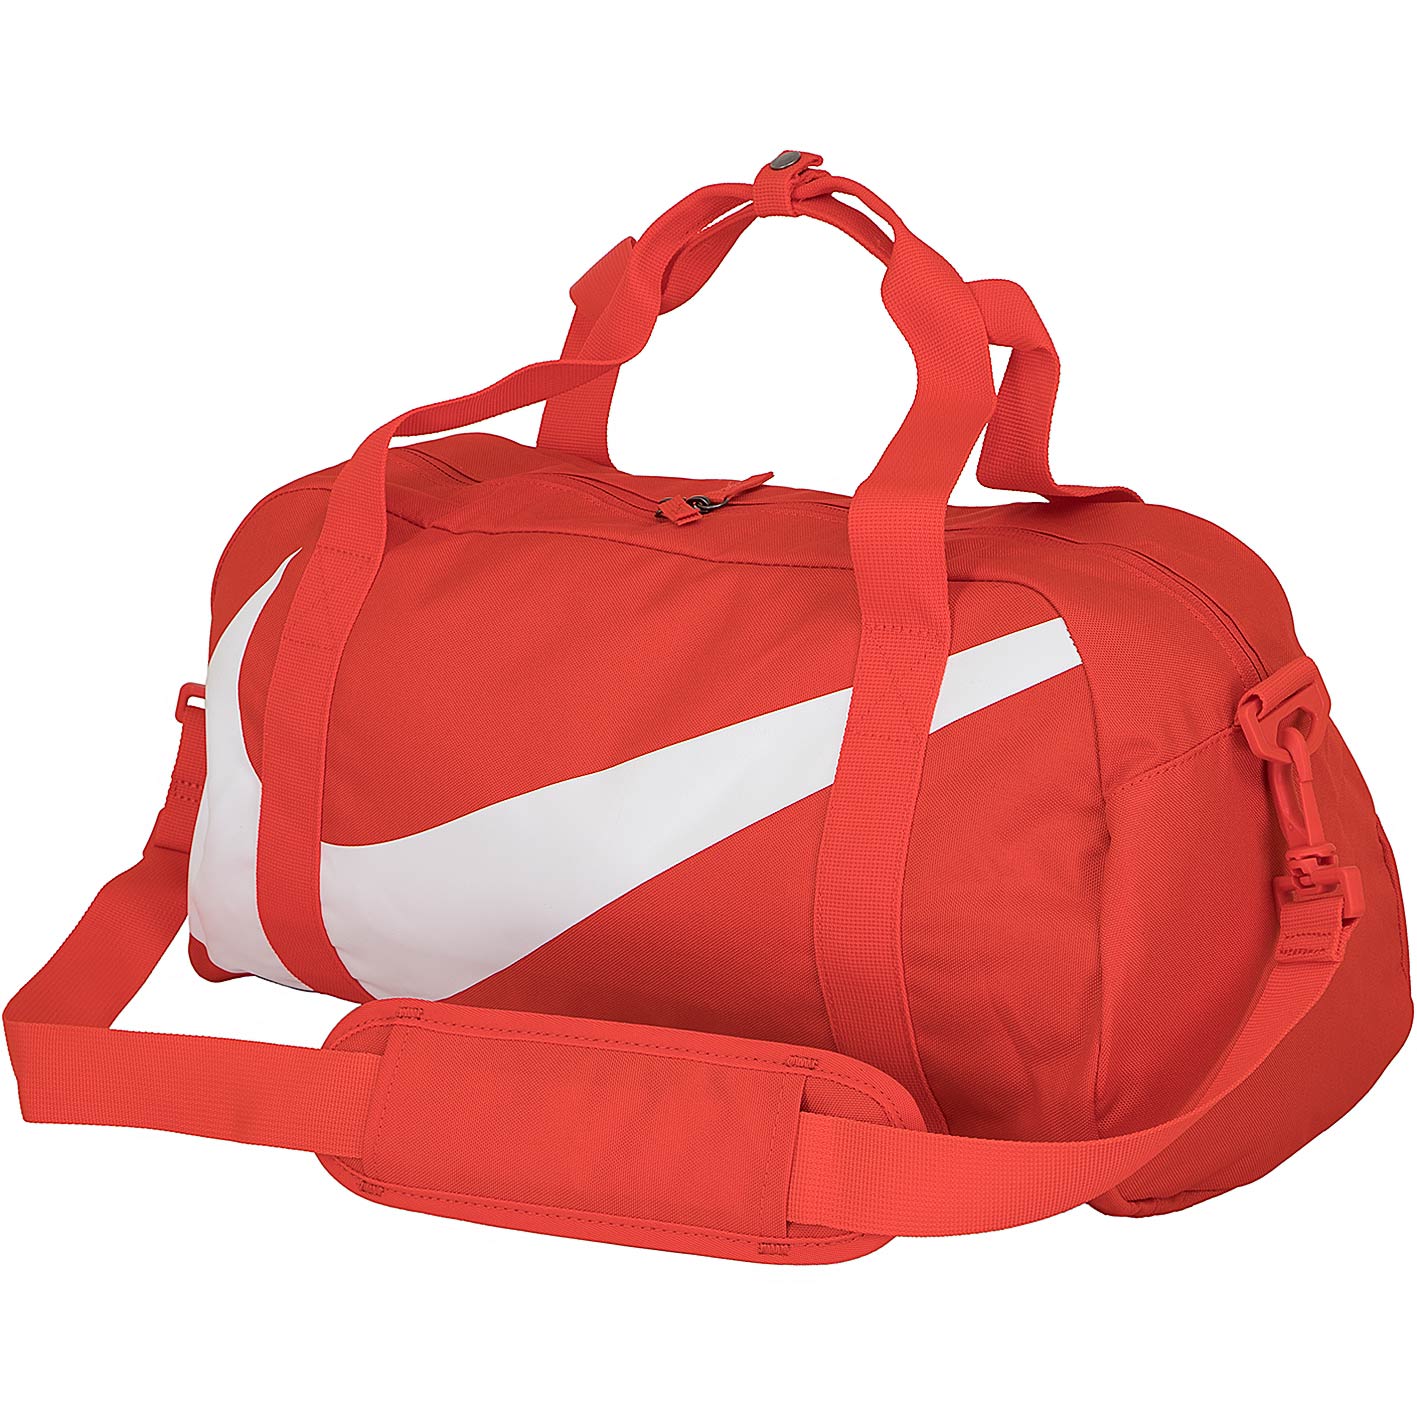 ☆ Nike Kinder Tasche Gym Club orange/weiß - hier bestellen!